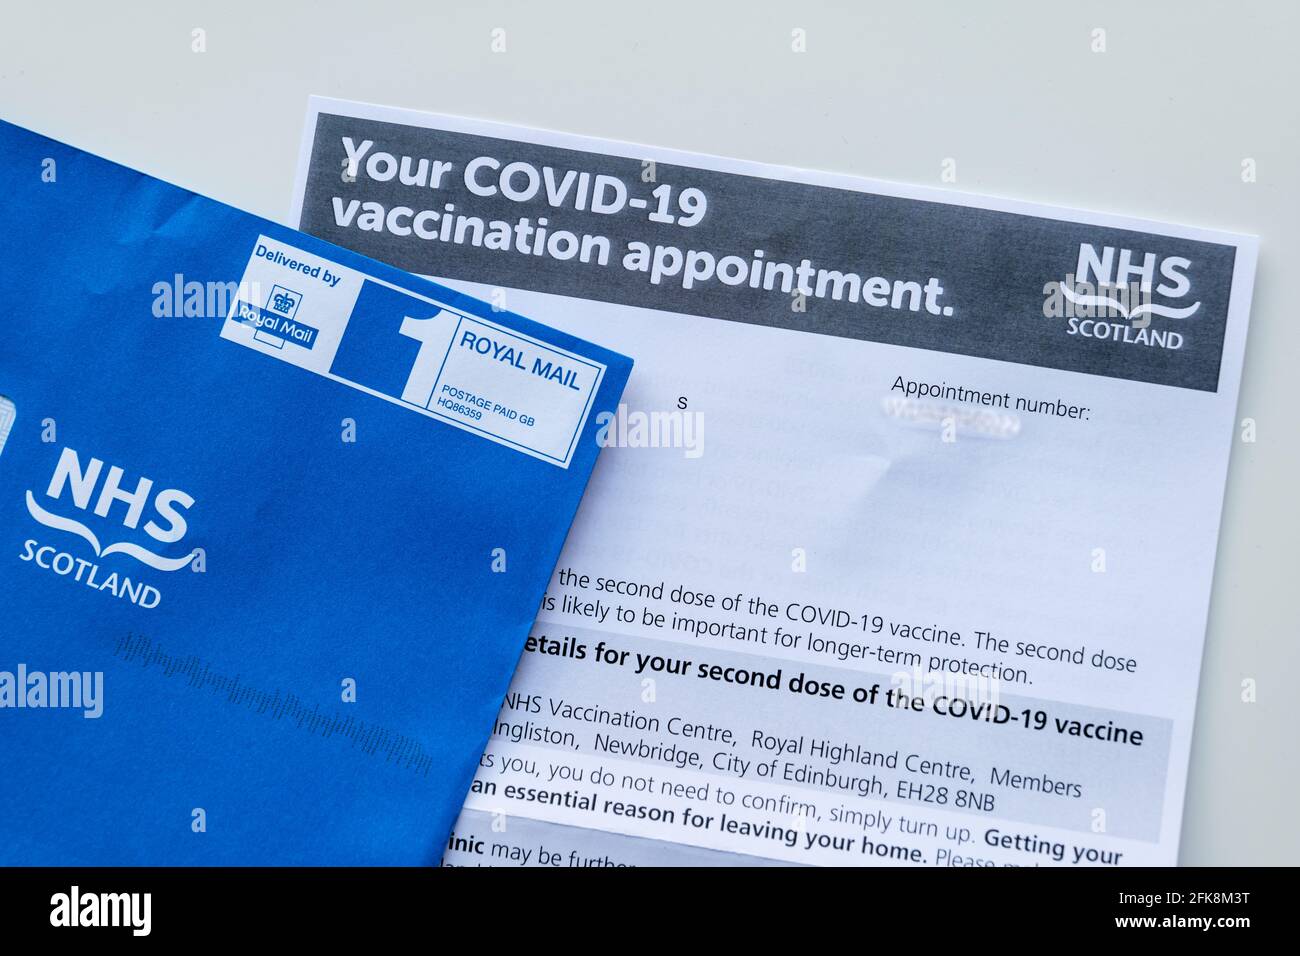 Coronavirus Covid-19 carta de la segunda dosis de vacunación de NHS Escocia con sobre azul, Reino Unido Foto de stock